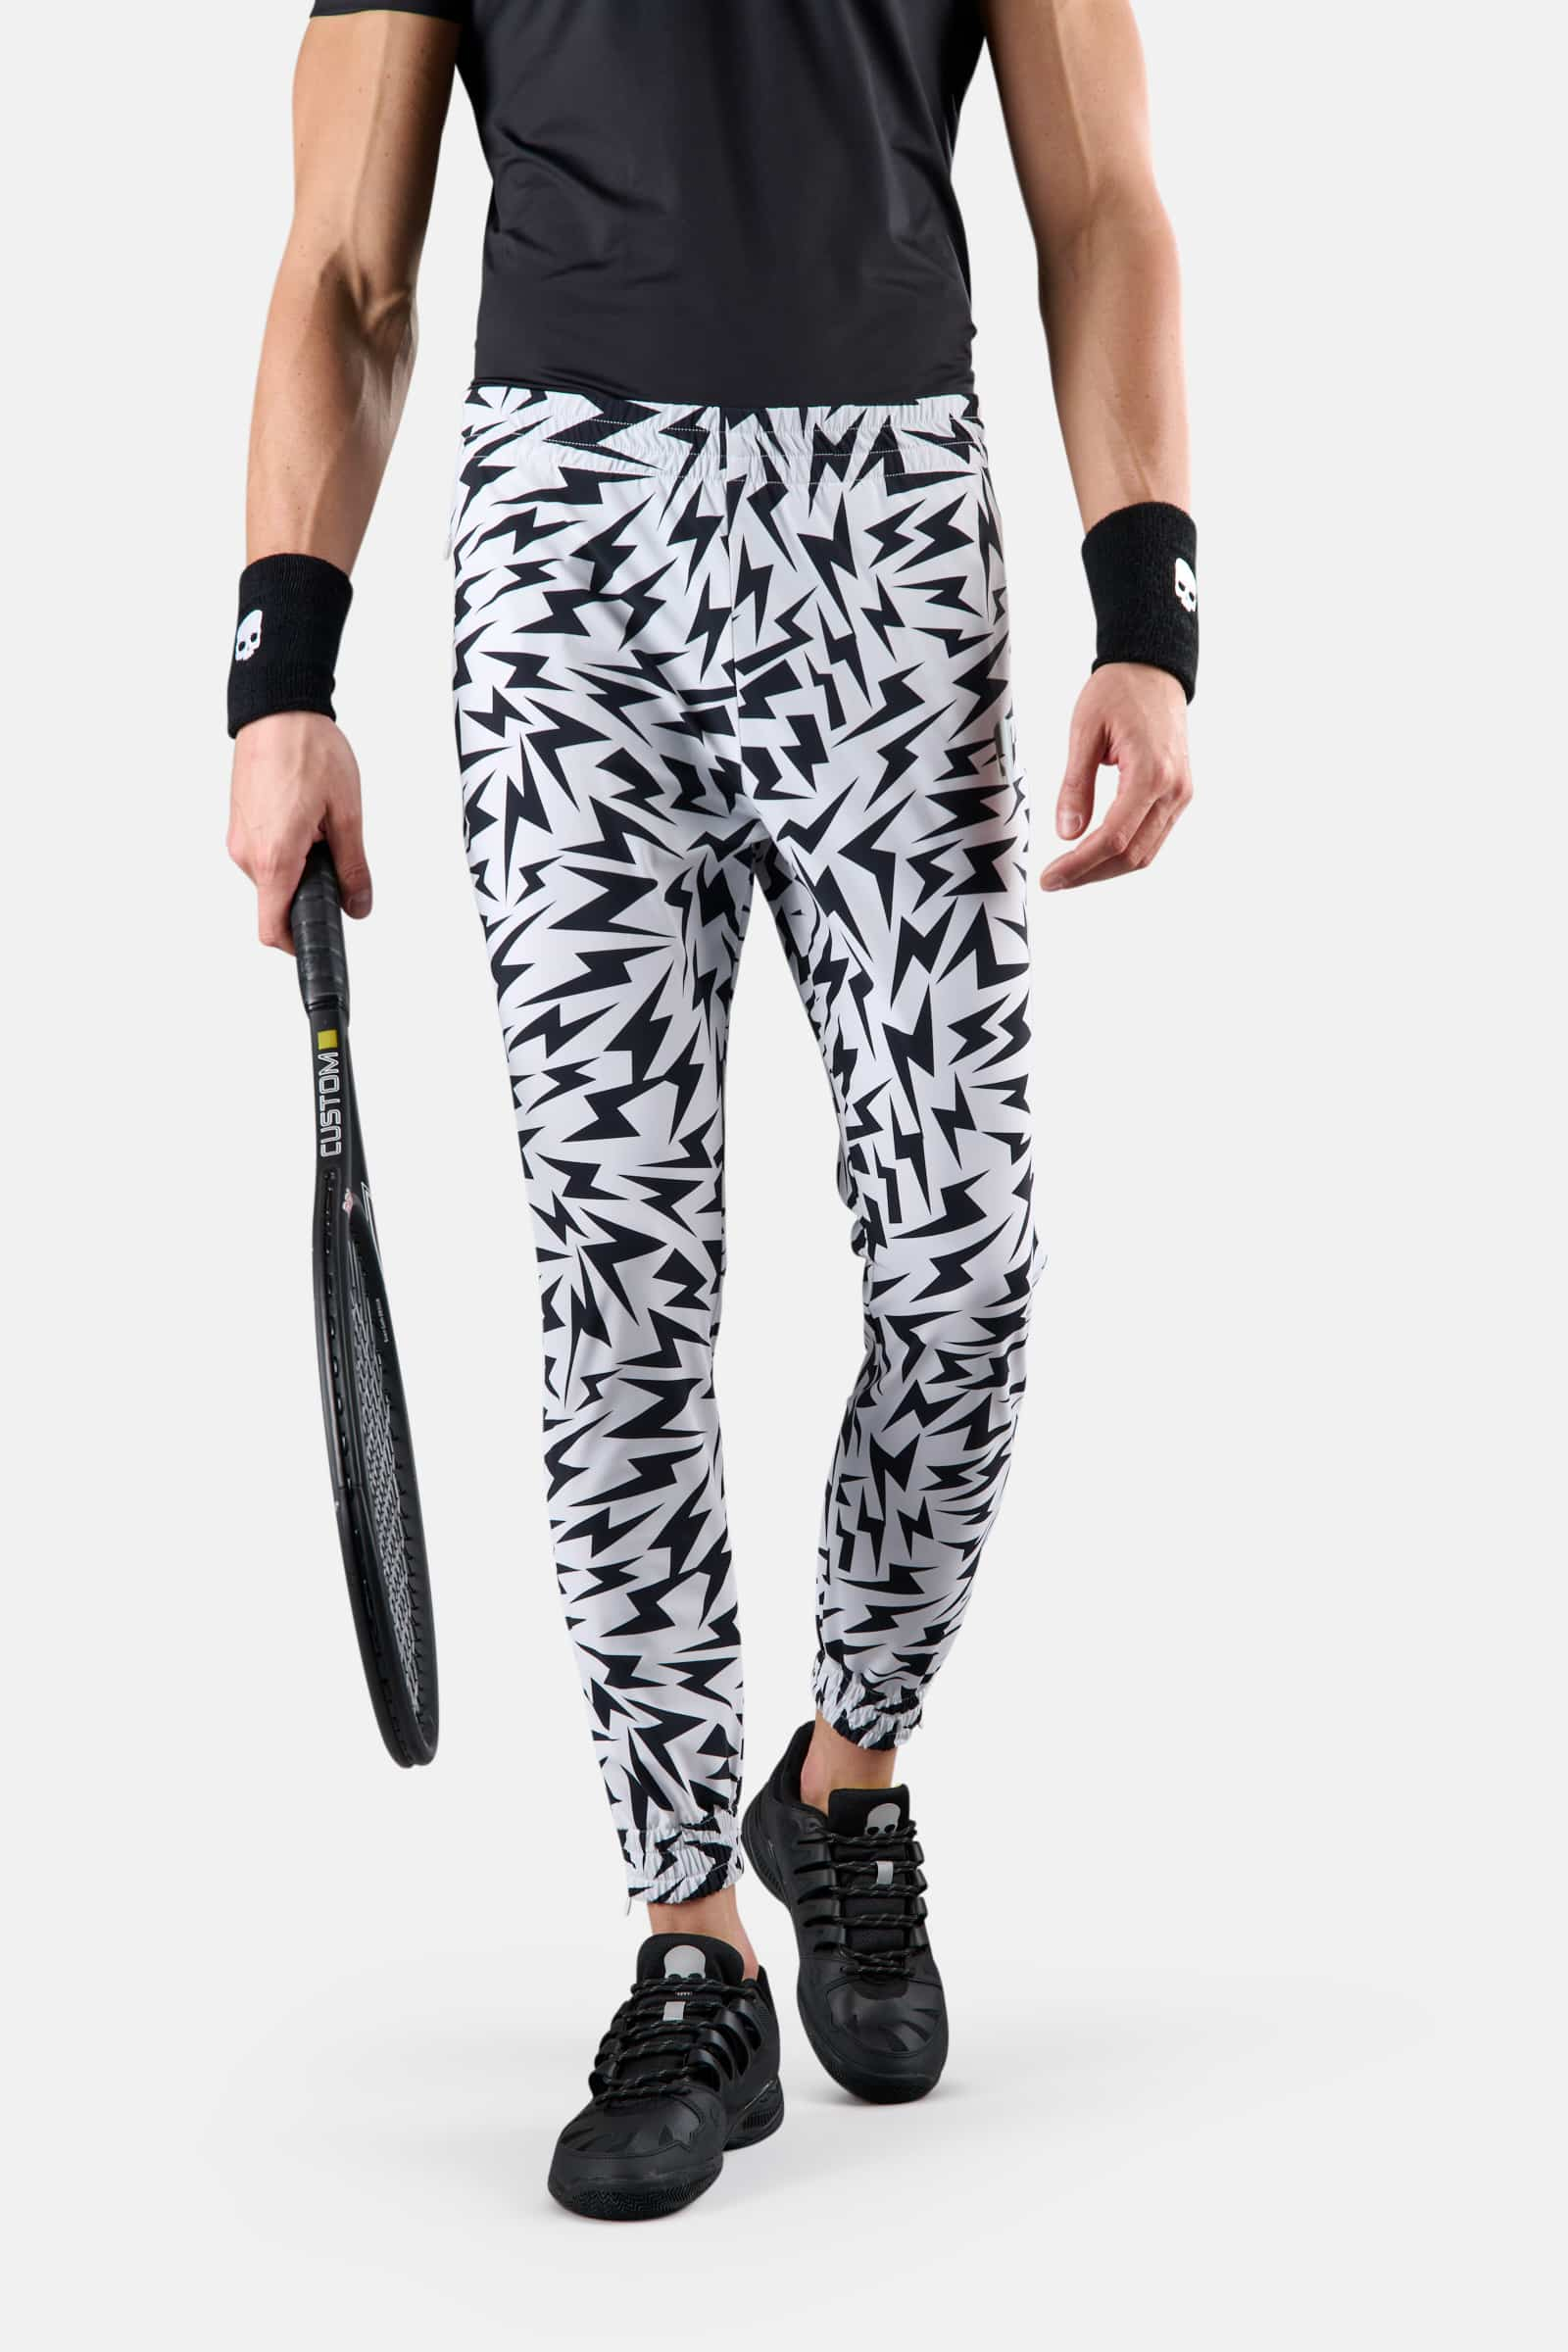 THUNDERS TECH PANTS - WHITE,BLACK - Hydrogen - Luxury Sportwear